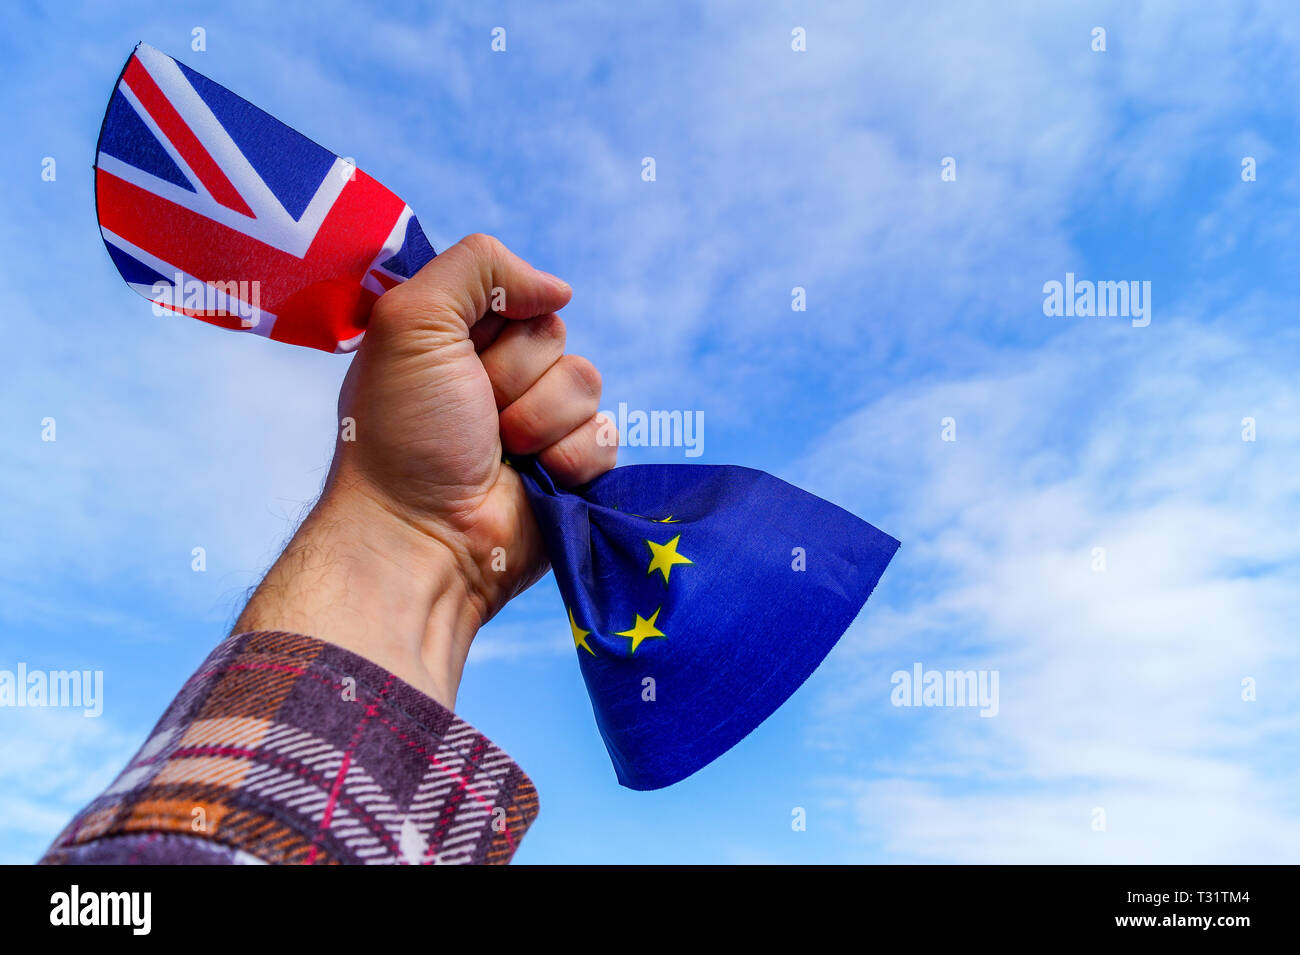 Un homme part tient dans son poing les drapeaux de l'Angleterre et l'Union européenne contre un ciel bleu et symbolise Brexit Brexit ou pas. Copie de l'image s Banque D'Images